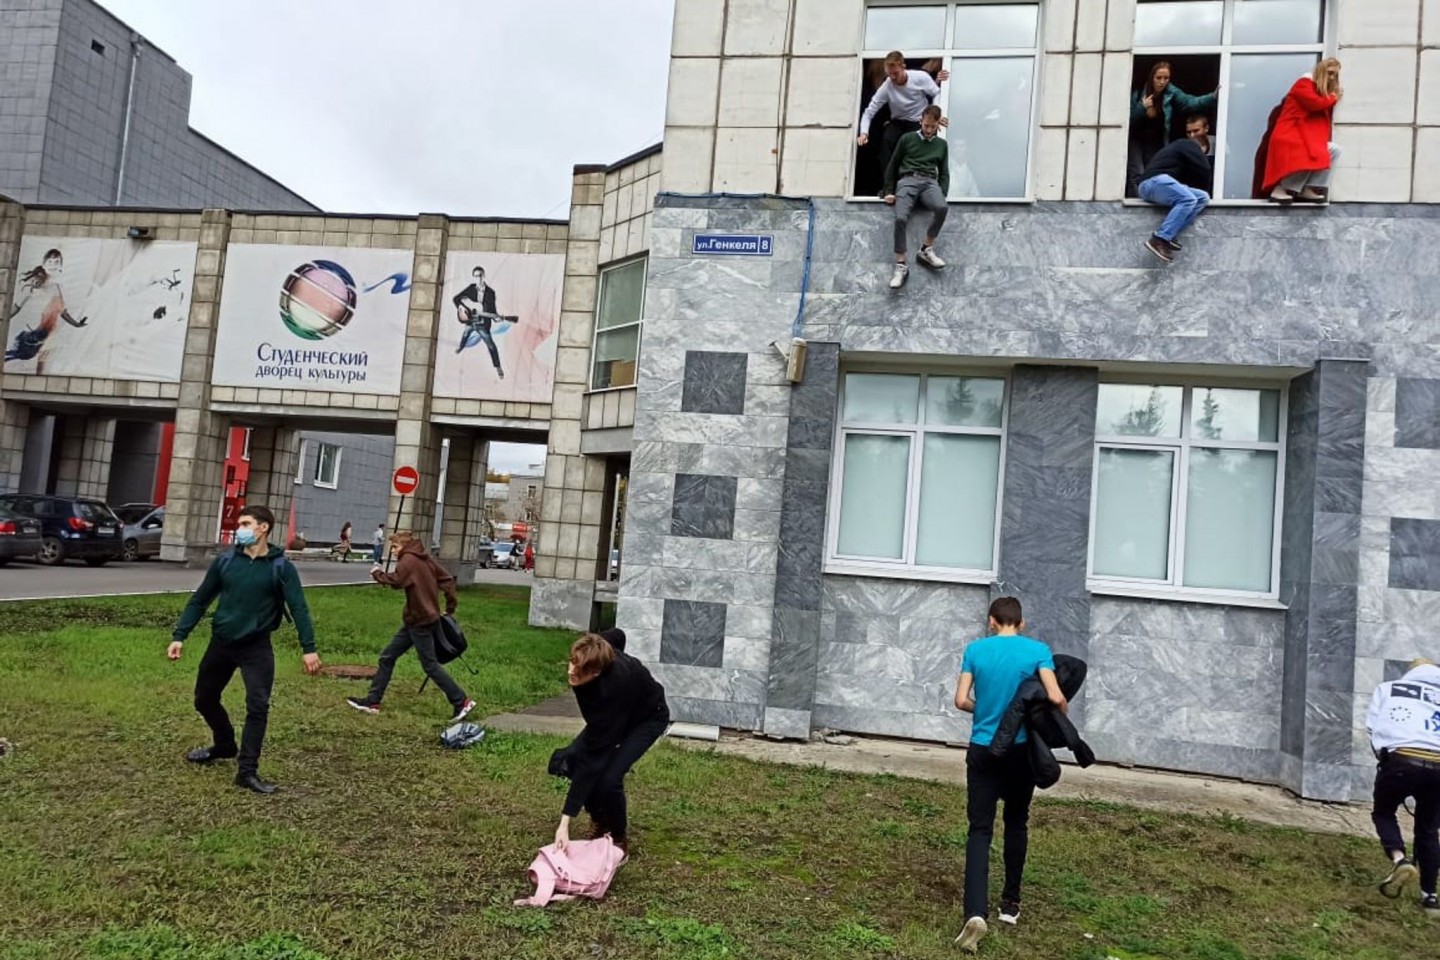 Studenten springen aus Fenstern der Universität in Perm.